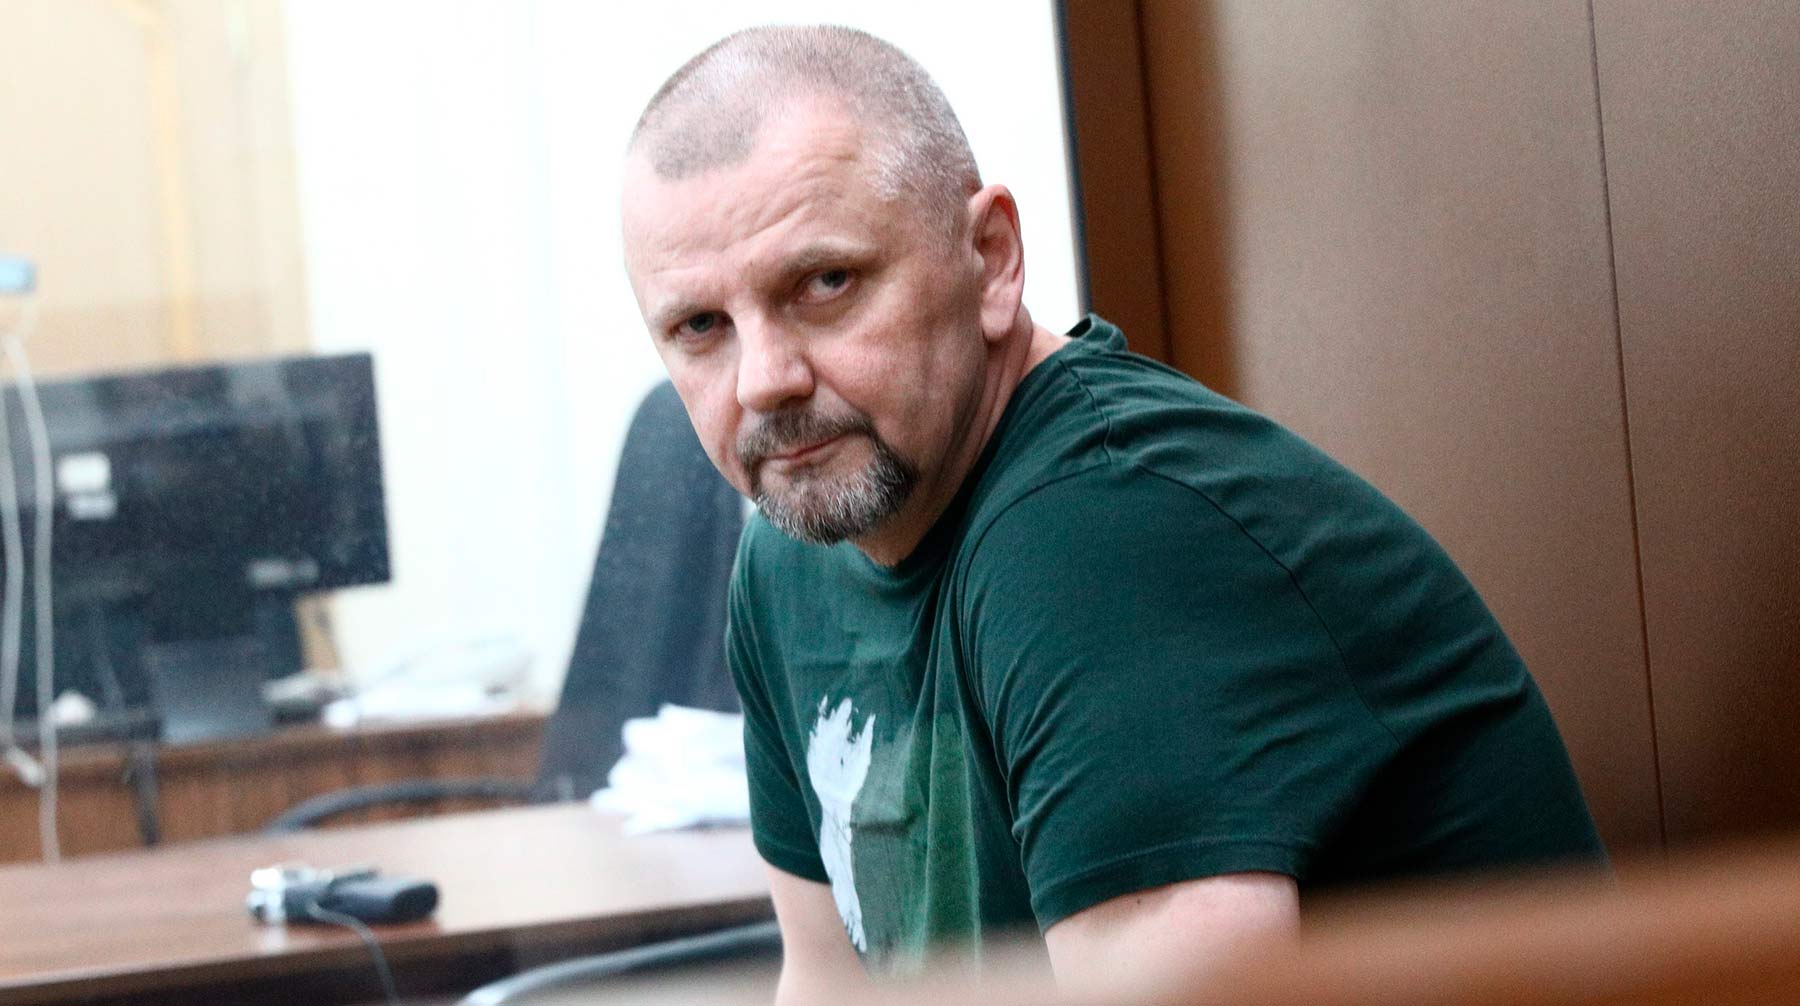 Суд рассмотрит ходатайство в ближайшее время Бывший депутат региональной думы Николай Мистрюков в Басманном суде Москвы